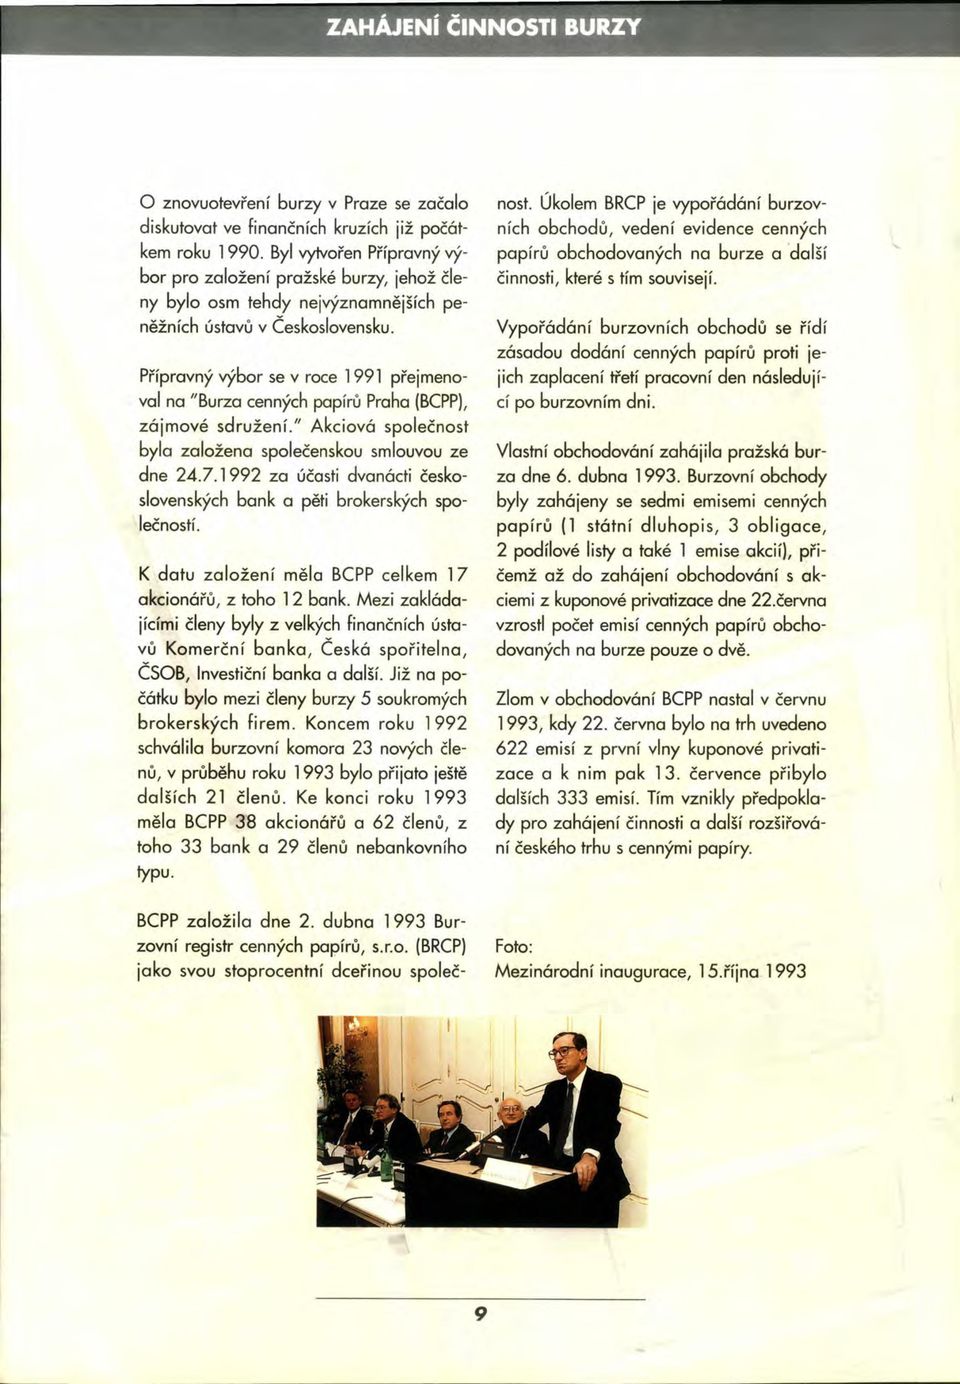 Přípravný výbor se v roce 1991 přejmenoval na "Burza cenných papírů Praha (BCPP), zájmové sdružení." Akciová společnost byla založena společenskou smlouvou ze dne 24.7.